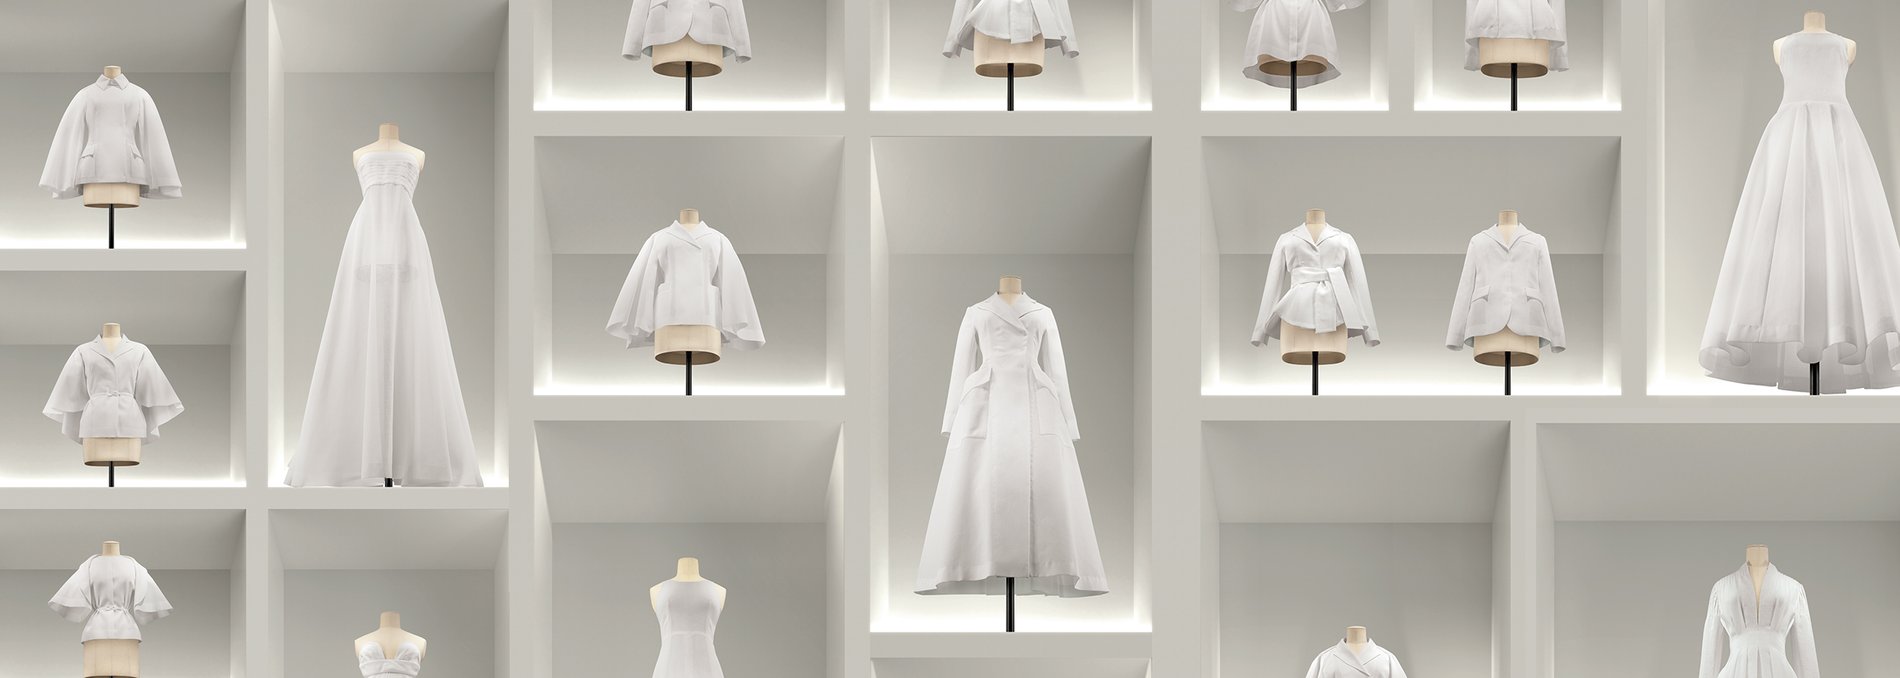 Nhà mốt Dior chiều lòng các tín đồ hàng hiệu với trải nghiệm mua sắm tuyệt  vời tại cửa hàng mới  Tạp chí Đẹp